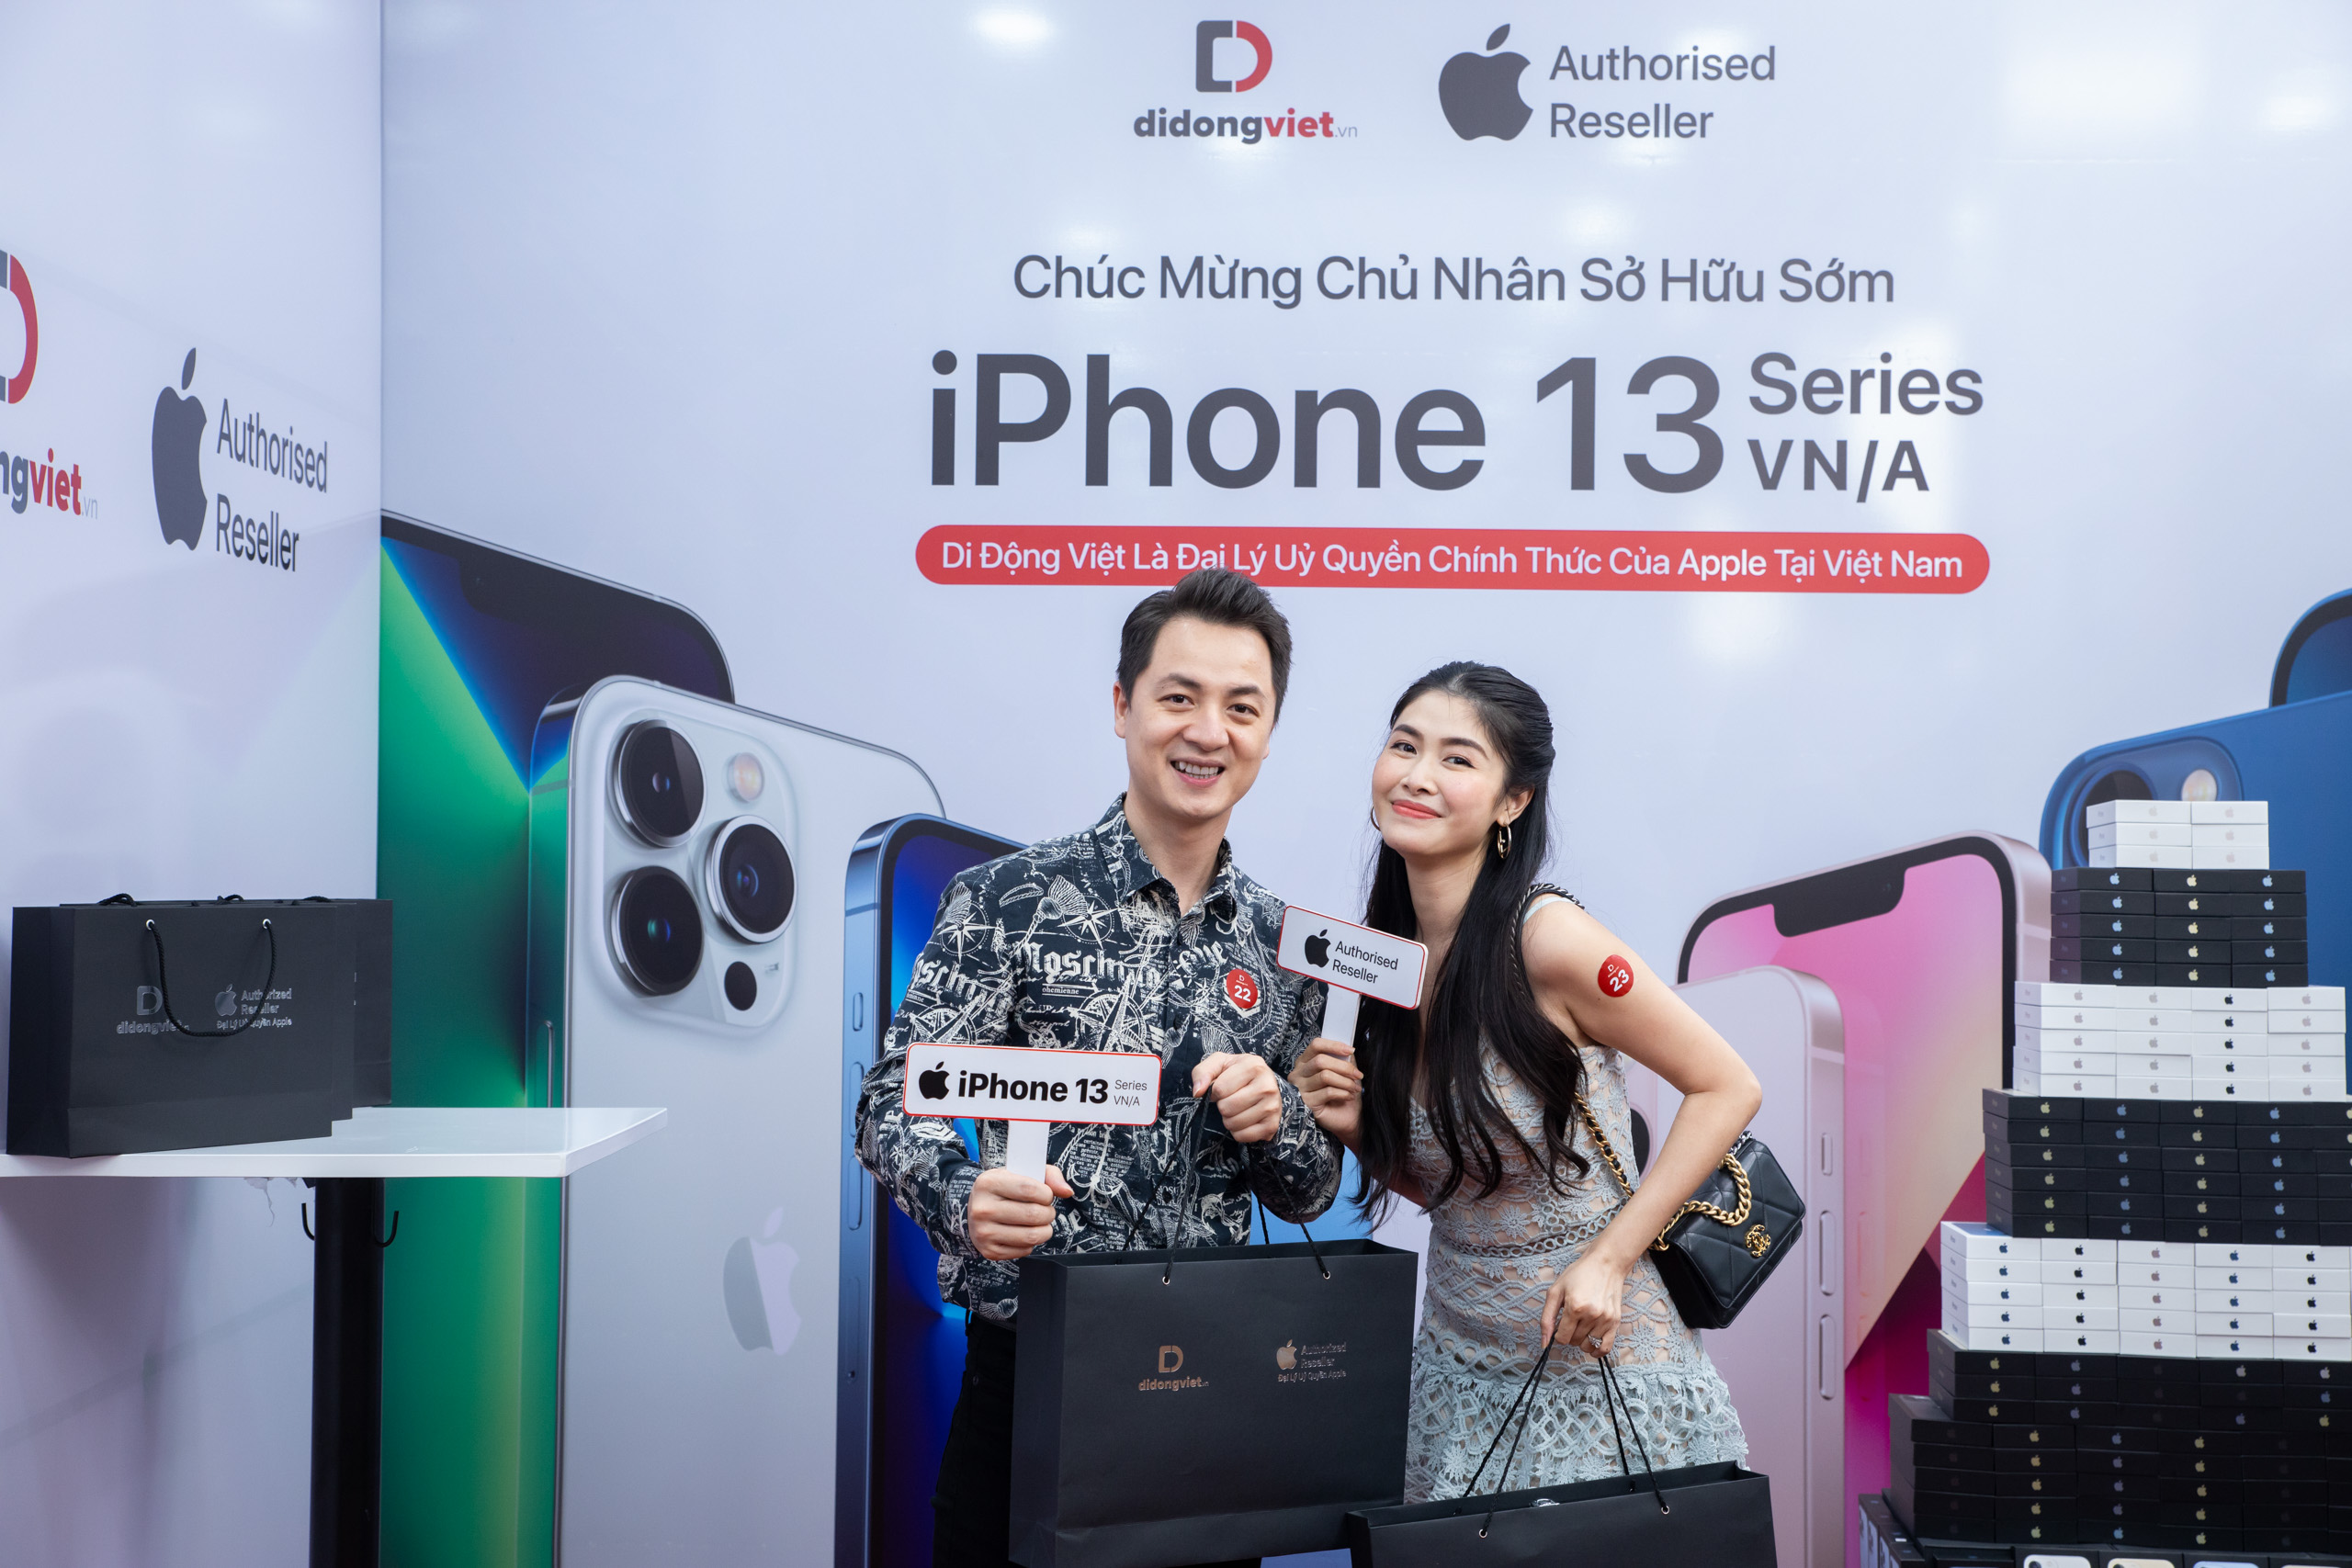 Mở bán sớm iPhone 13 series VN/A tại Di Động Việt